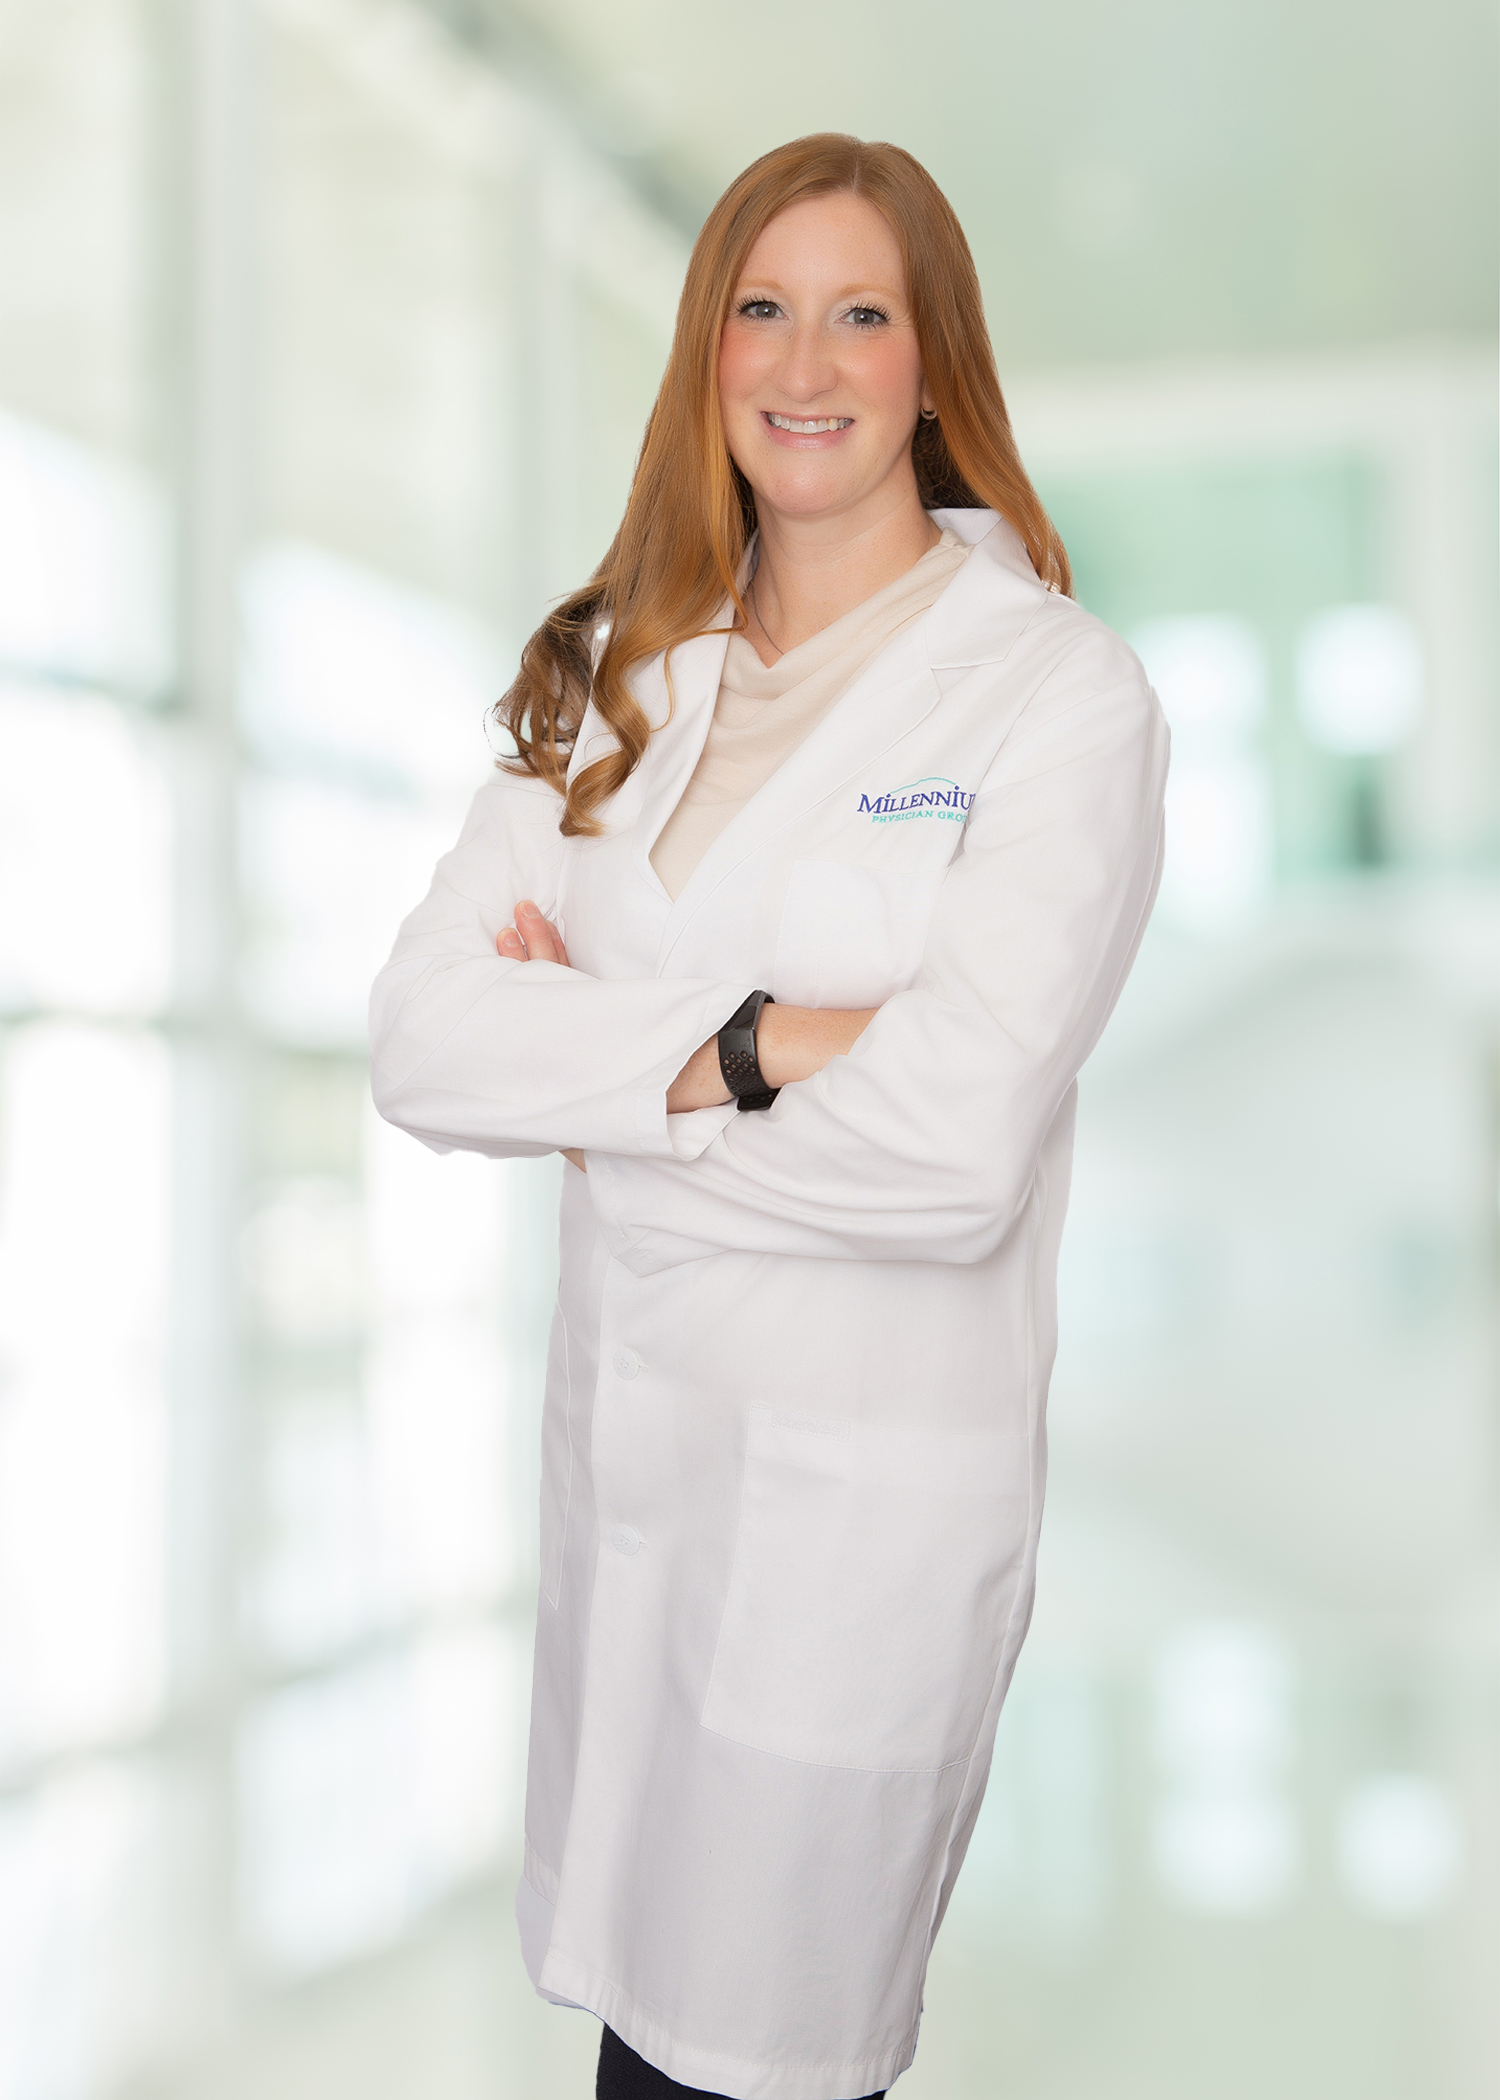 Port Charlotte Family Medicine Physician Allison Koss, D.O.